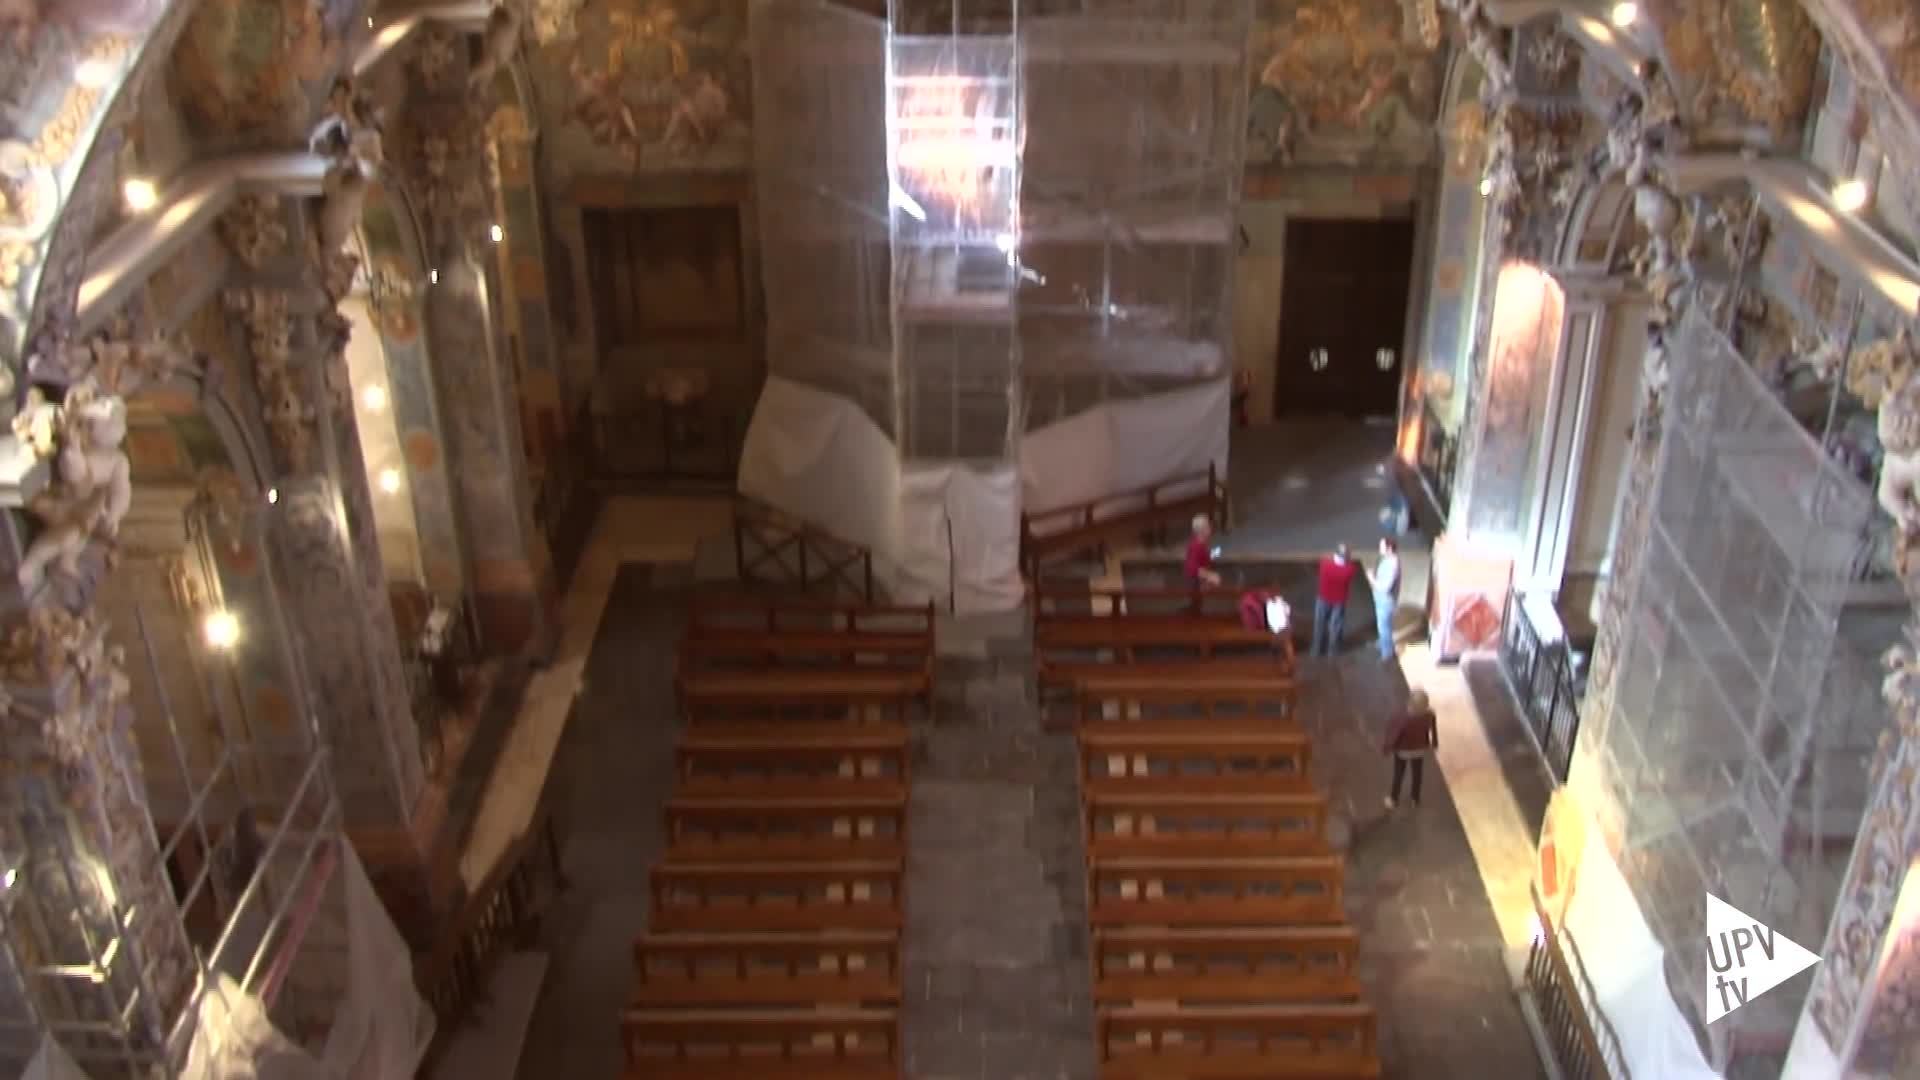 28-10-2015 Recta final restauración frescos San Nicolás